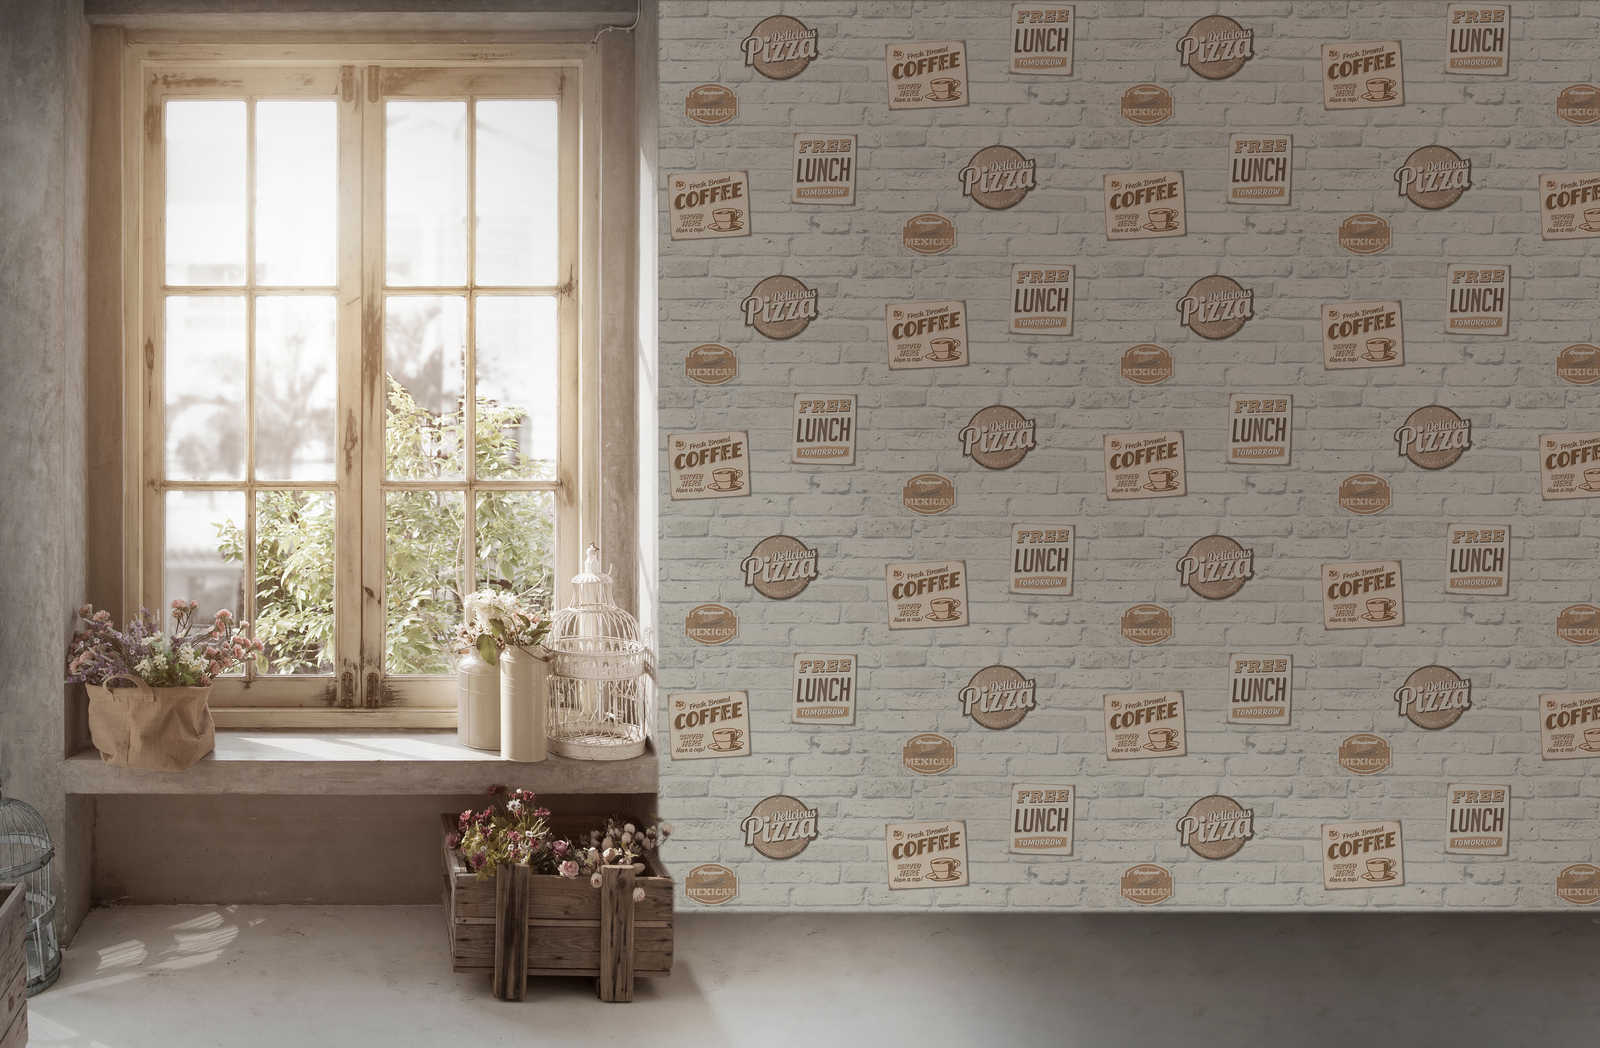             Zelfklevend behang | Witte bakstenen muur met reclameborden
        